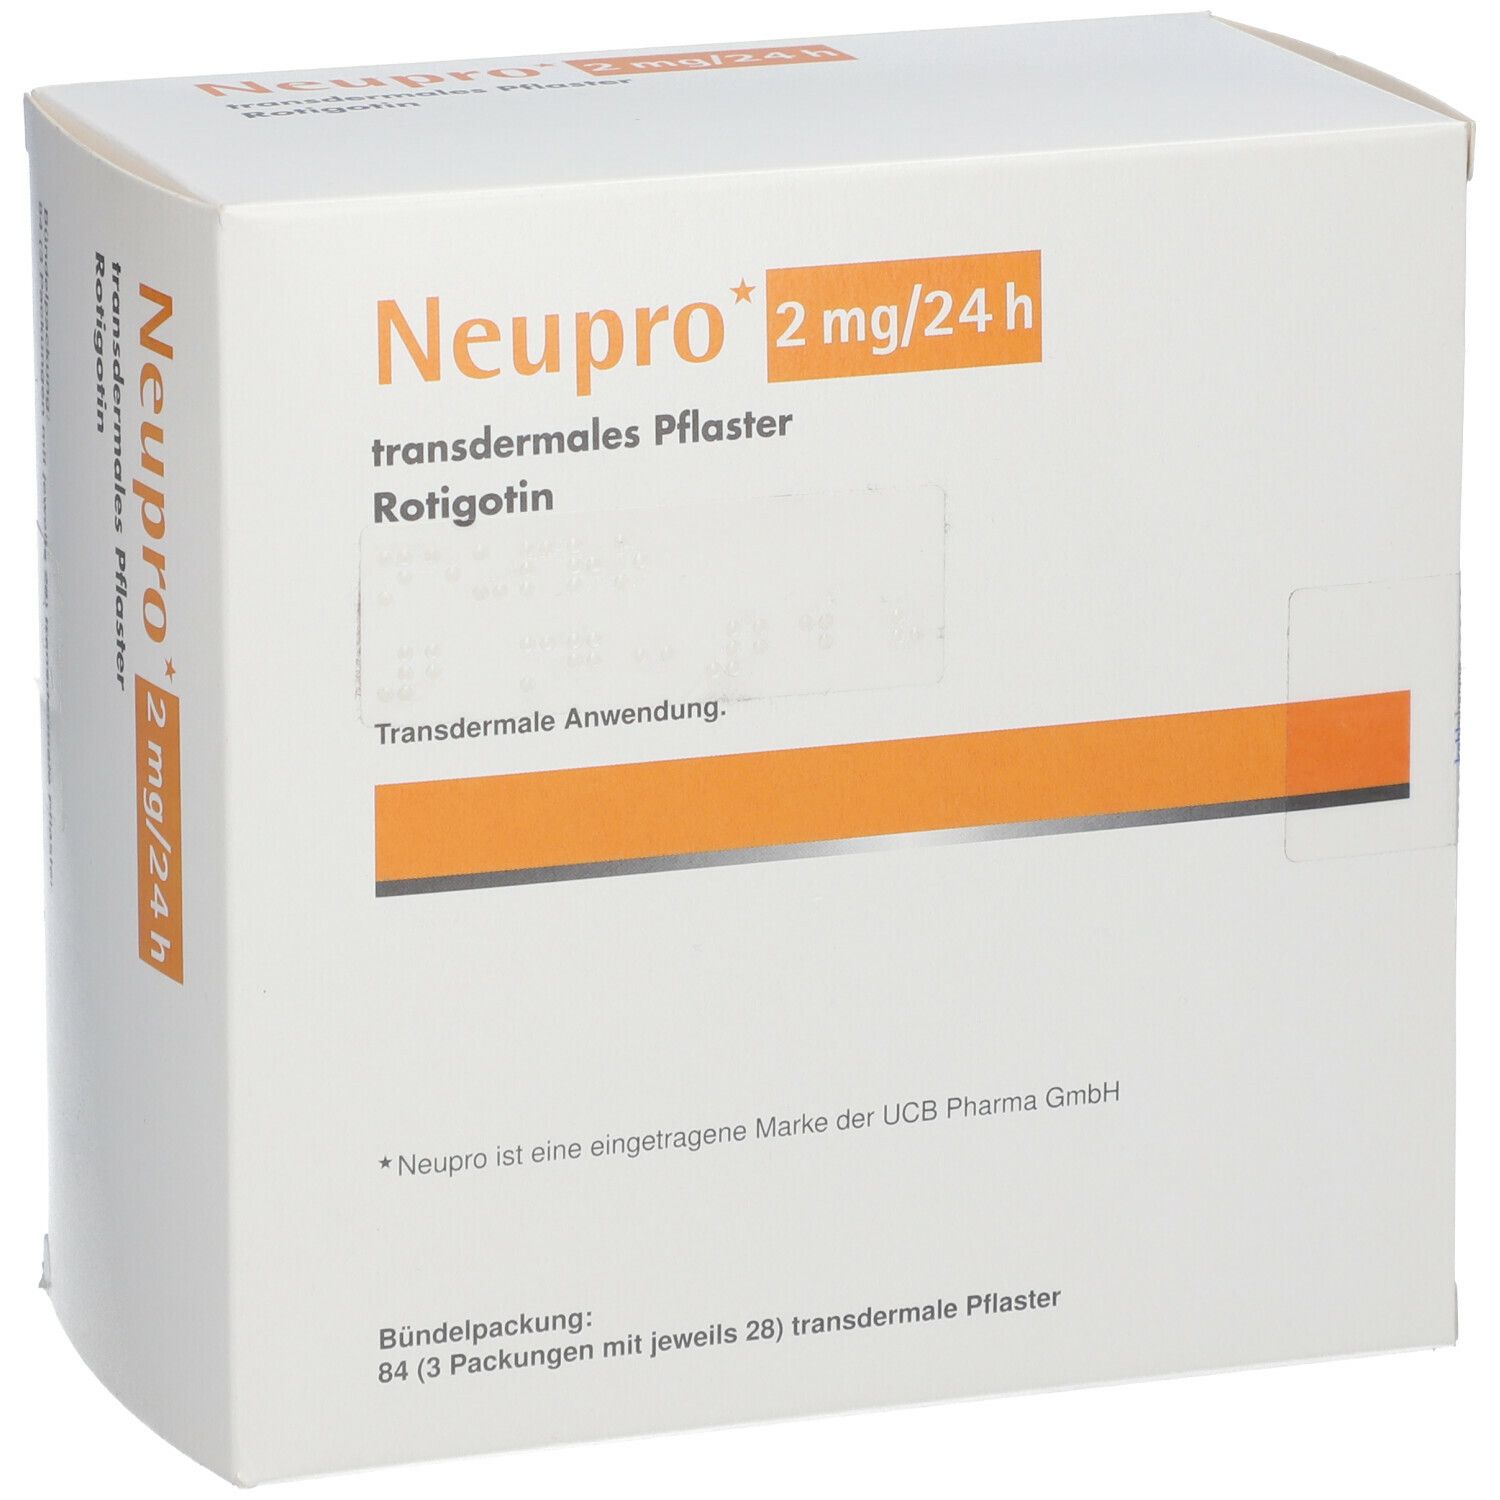 Neupro 2 mg/24h